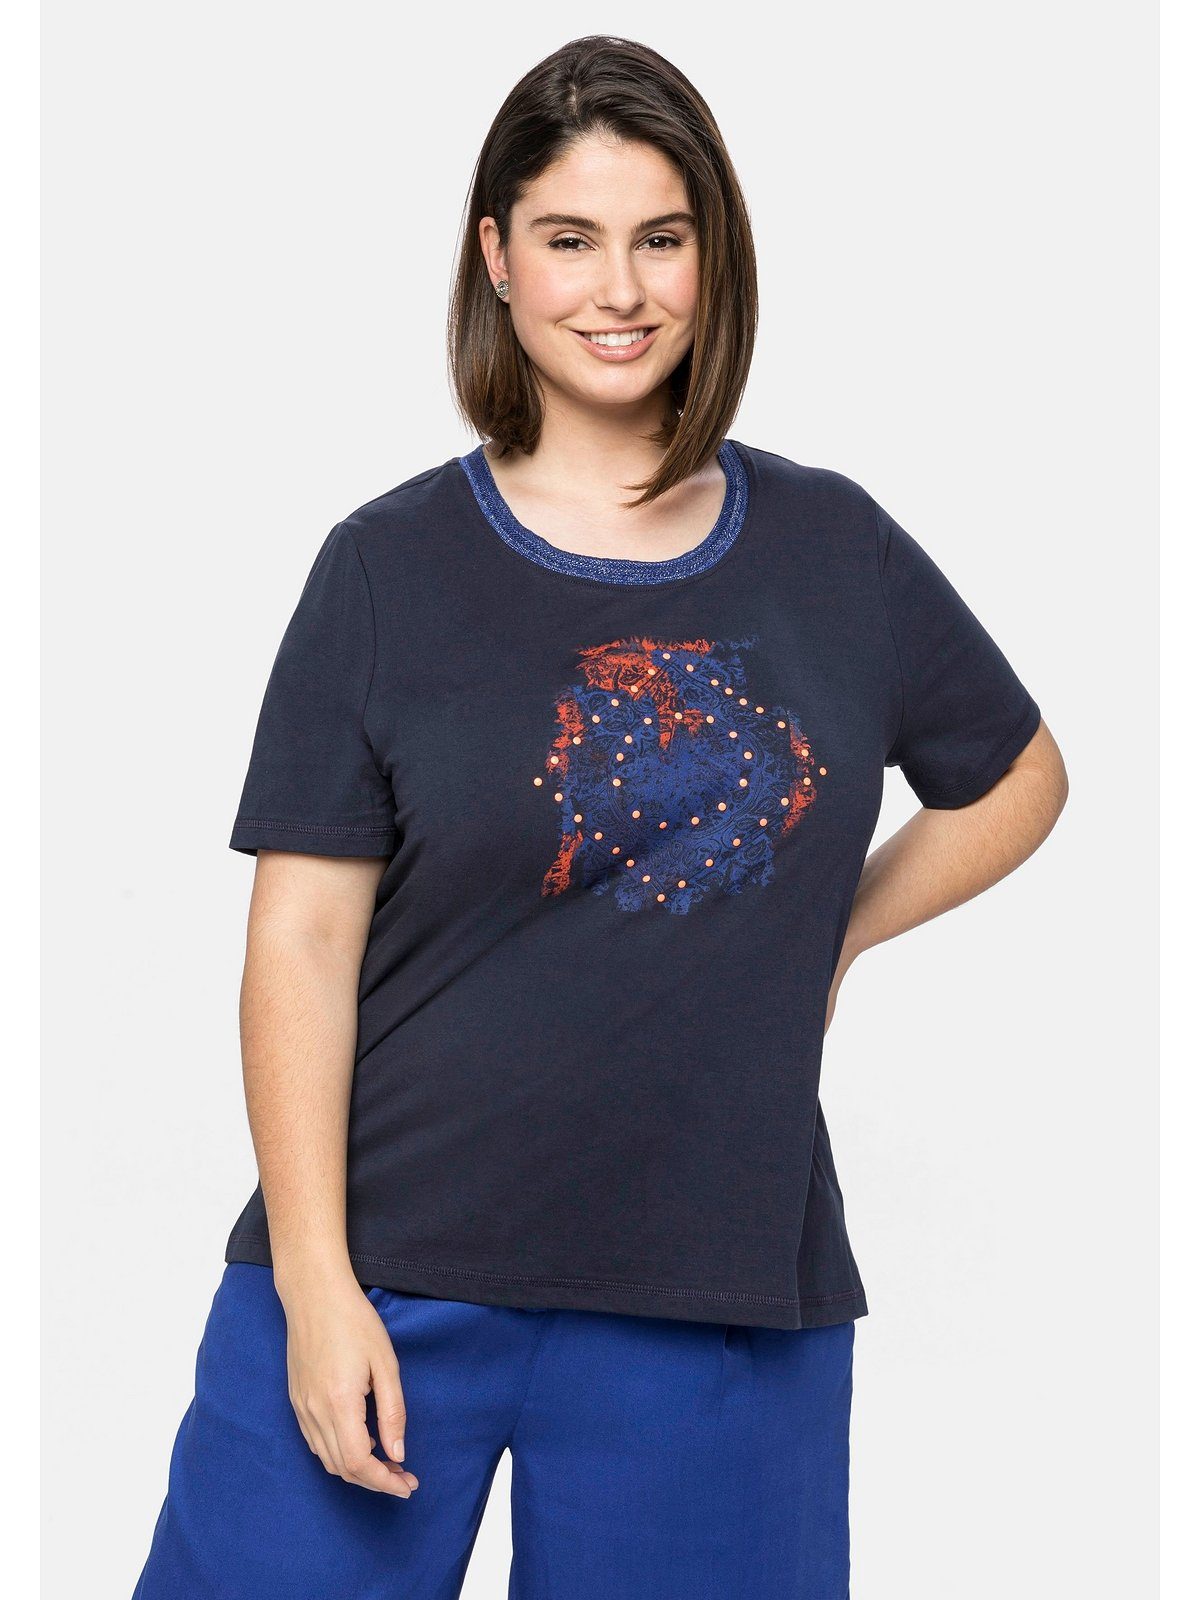 Sheego T-Shirt Große Größen mit Ausschnitt nachtblau Effektgarn Frontdruck und modischem am